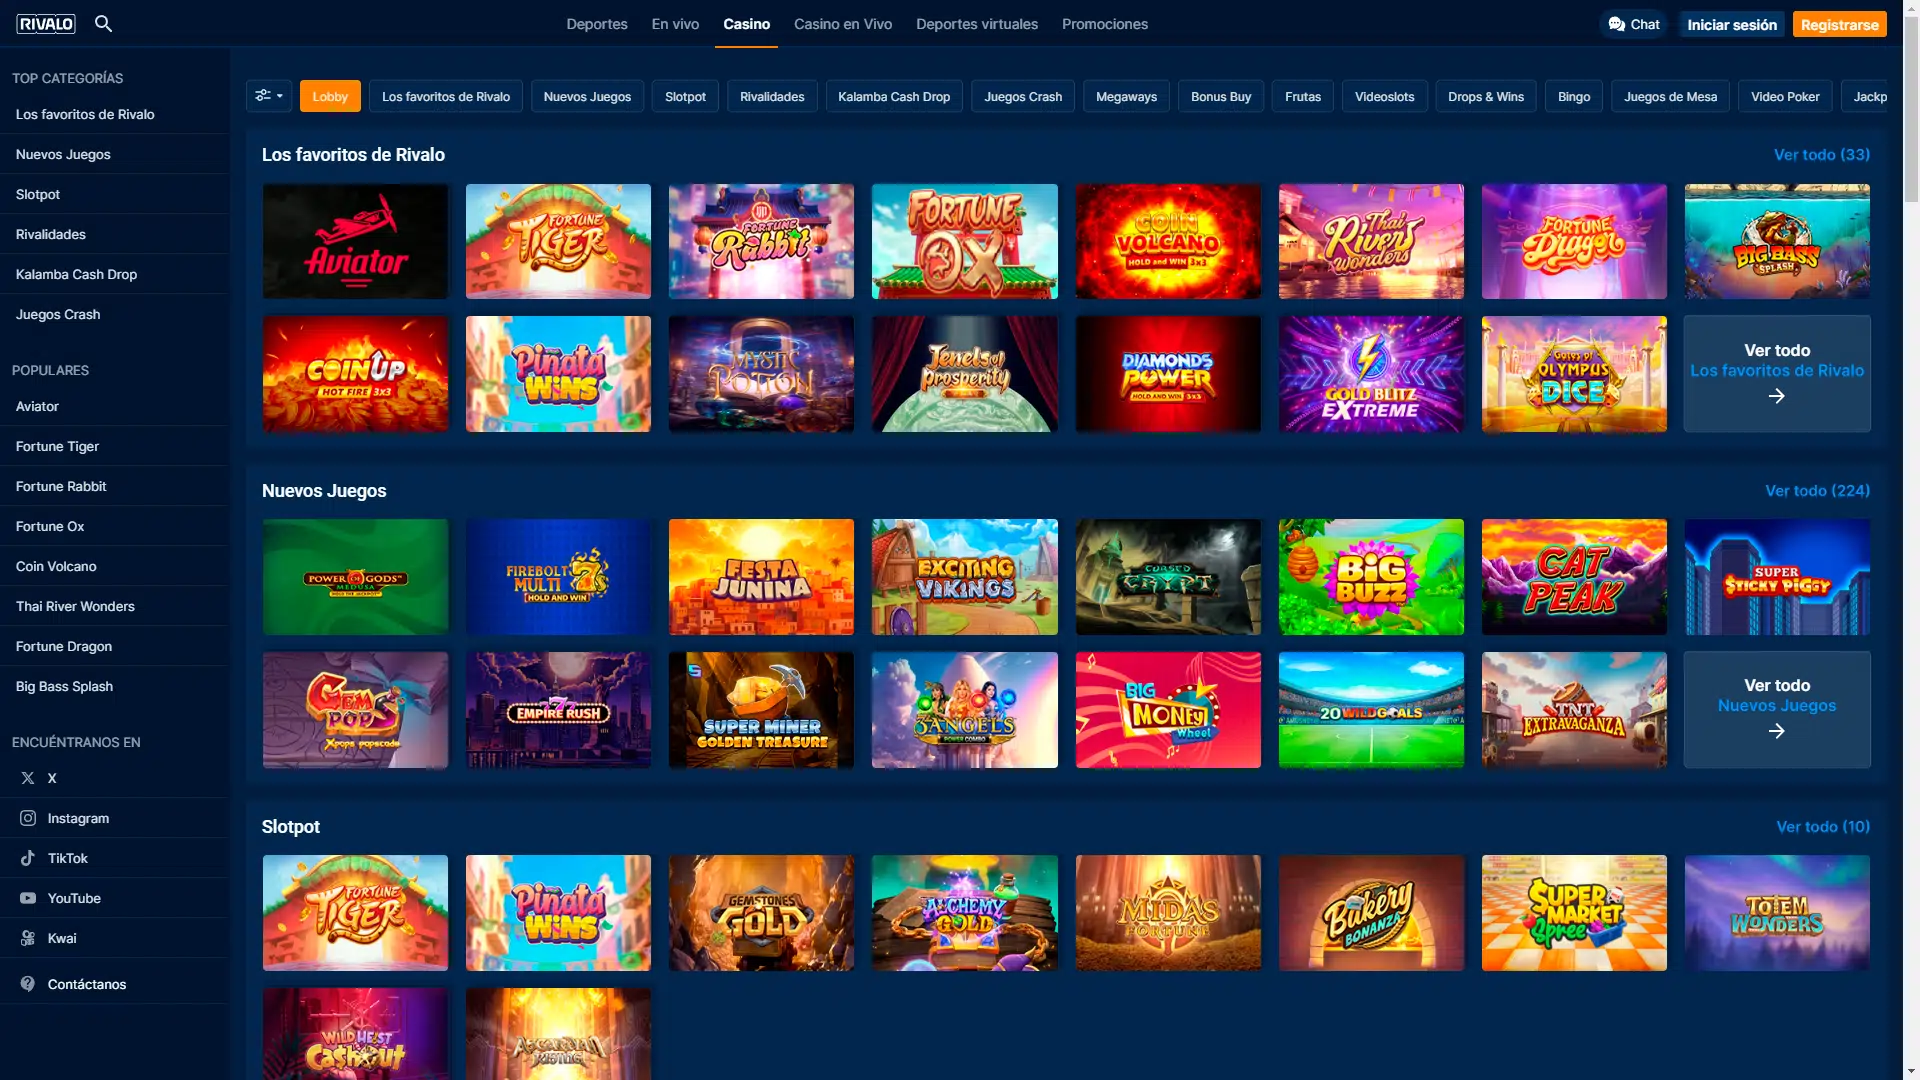 Captura de pantalla muestra la página de casino de Rivalo